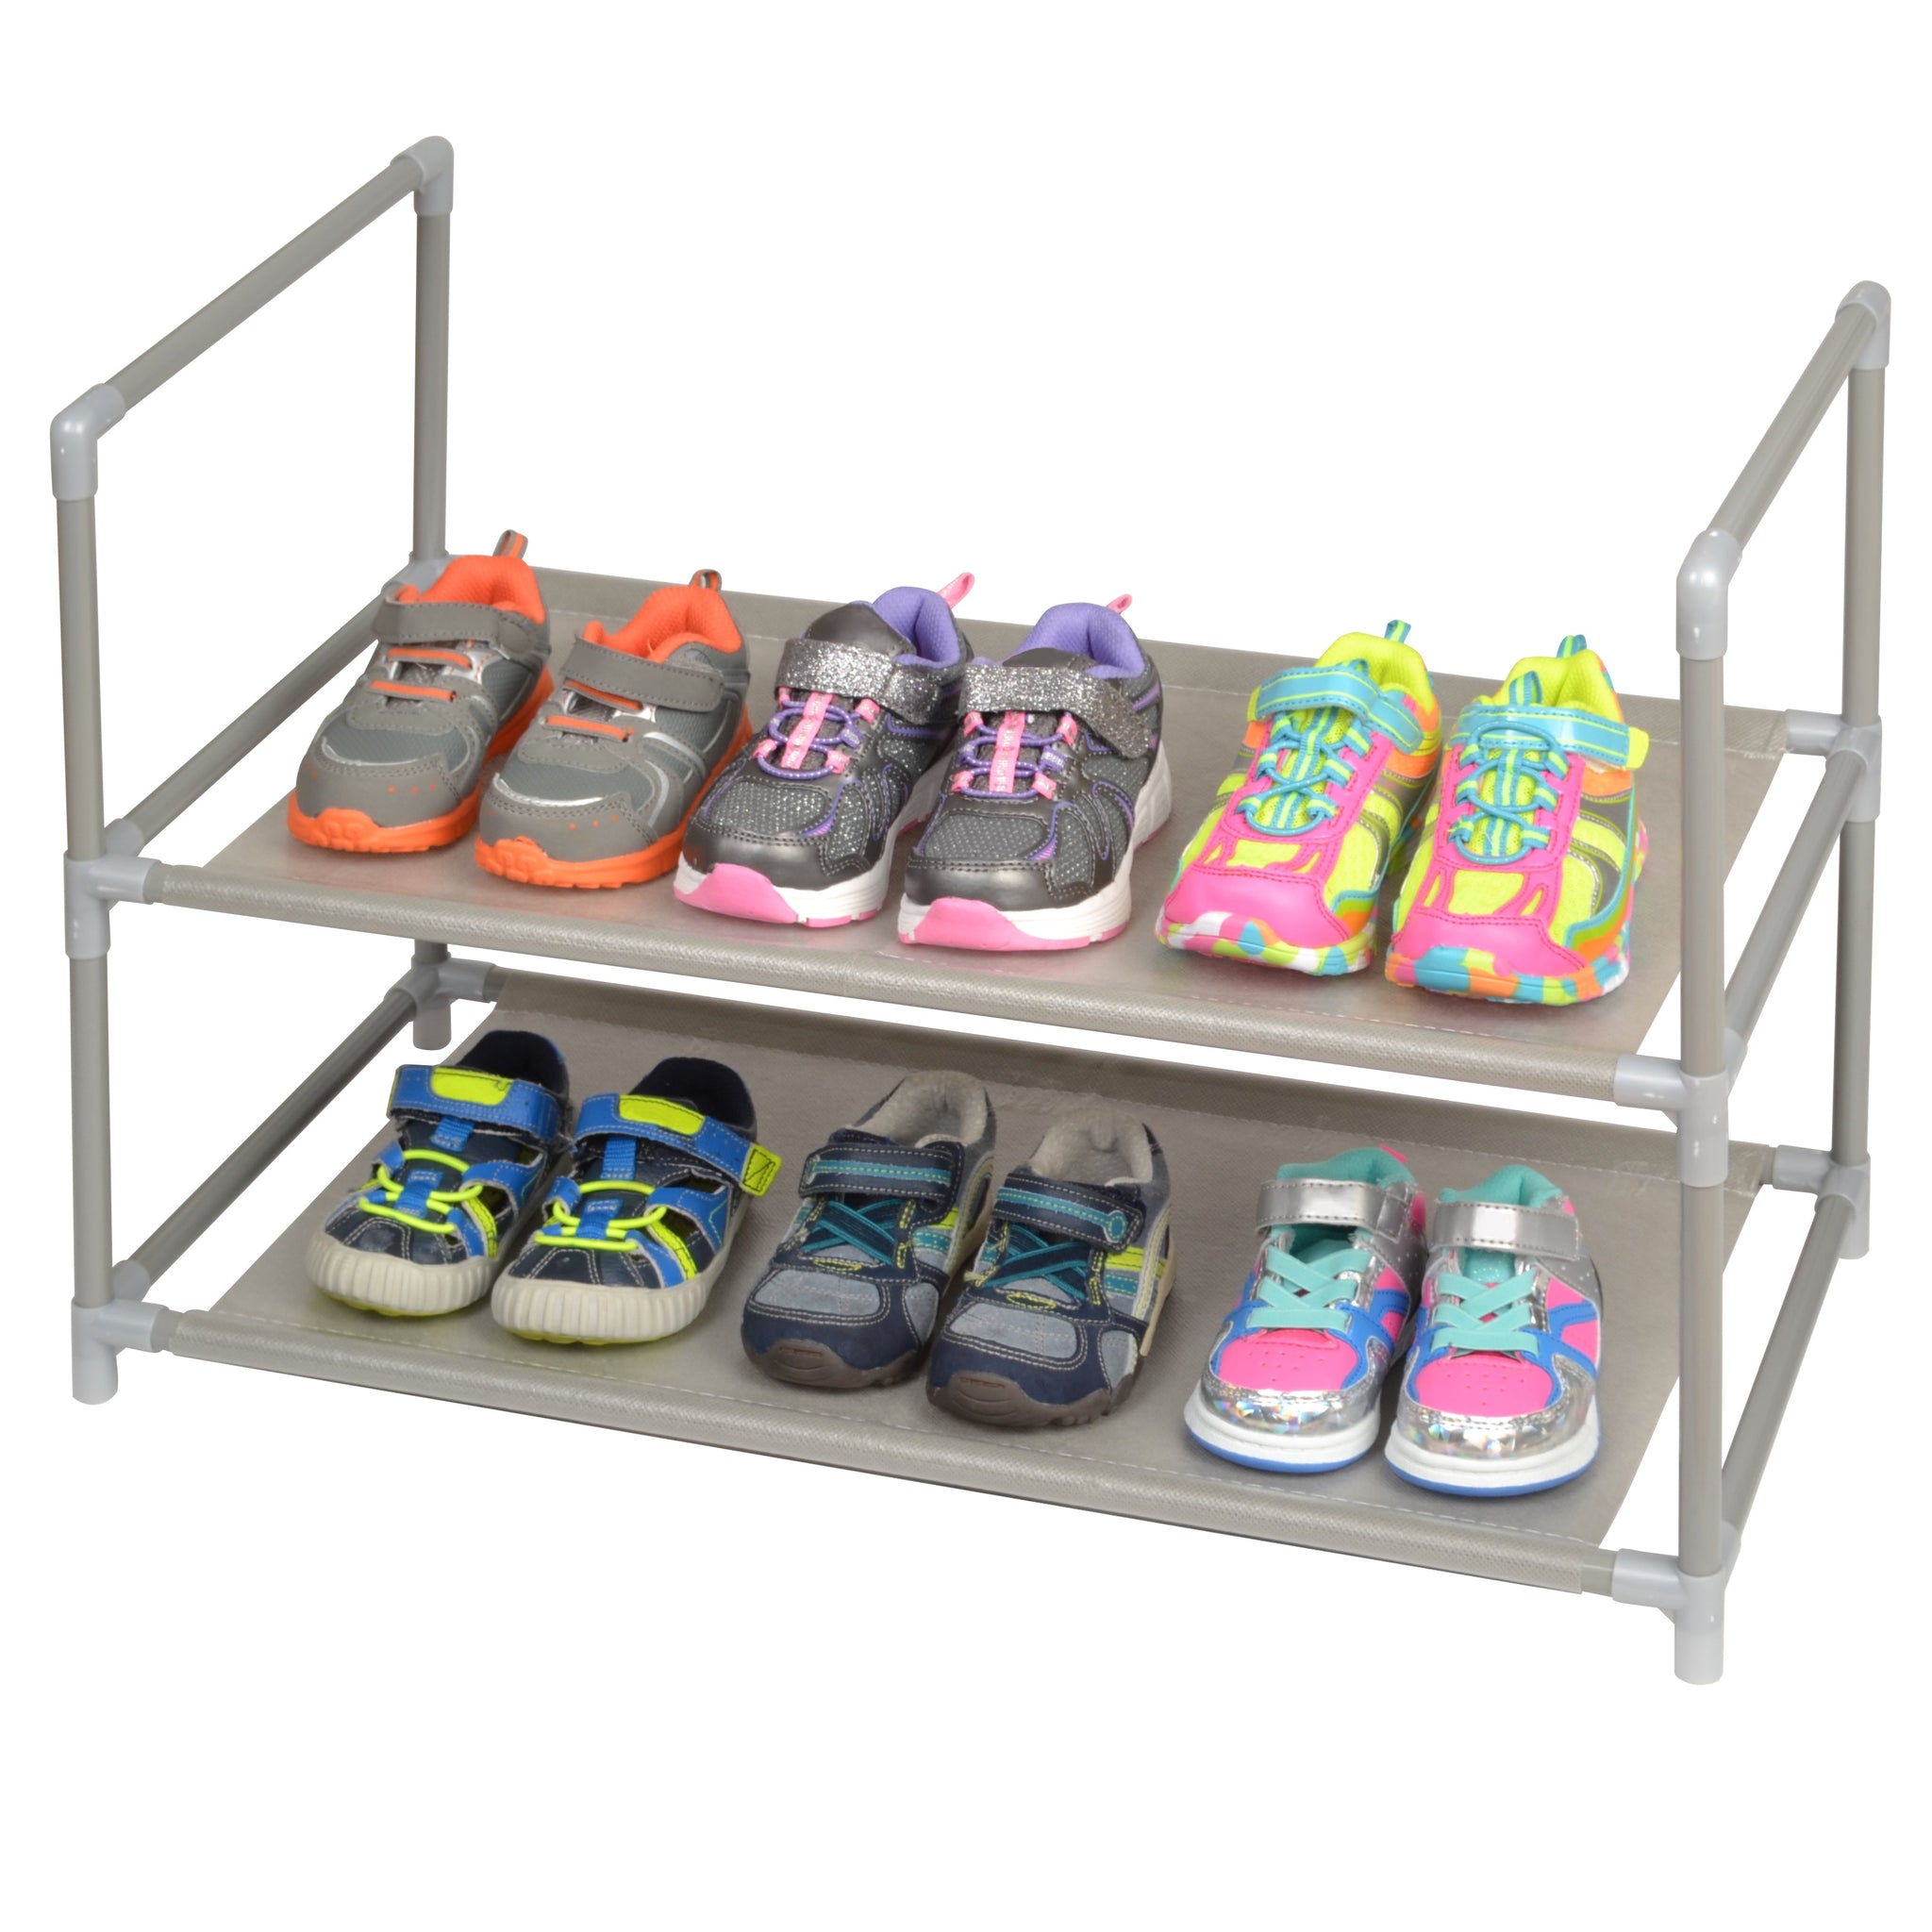 https://www.shopsmartdesign.com/cdn/shop/products/shoe-rack-shelf-with-laminated-liner-smart-design-storage-5314102-incrementing-number-675279_2048x2048.jpg?v=1679337261